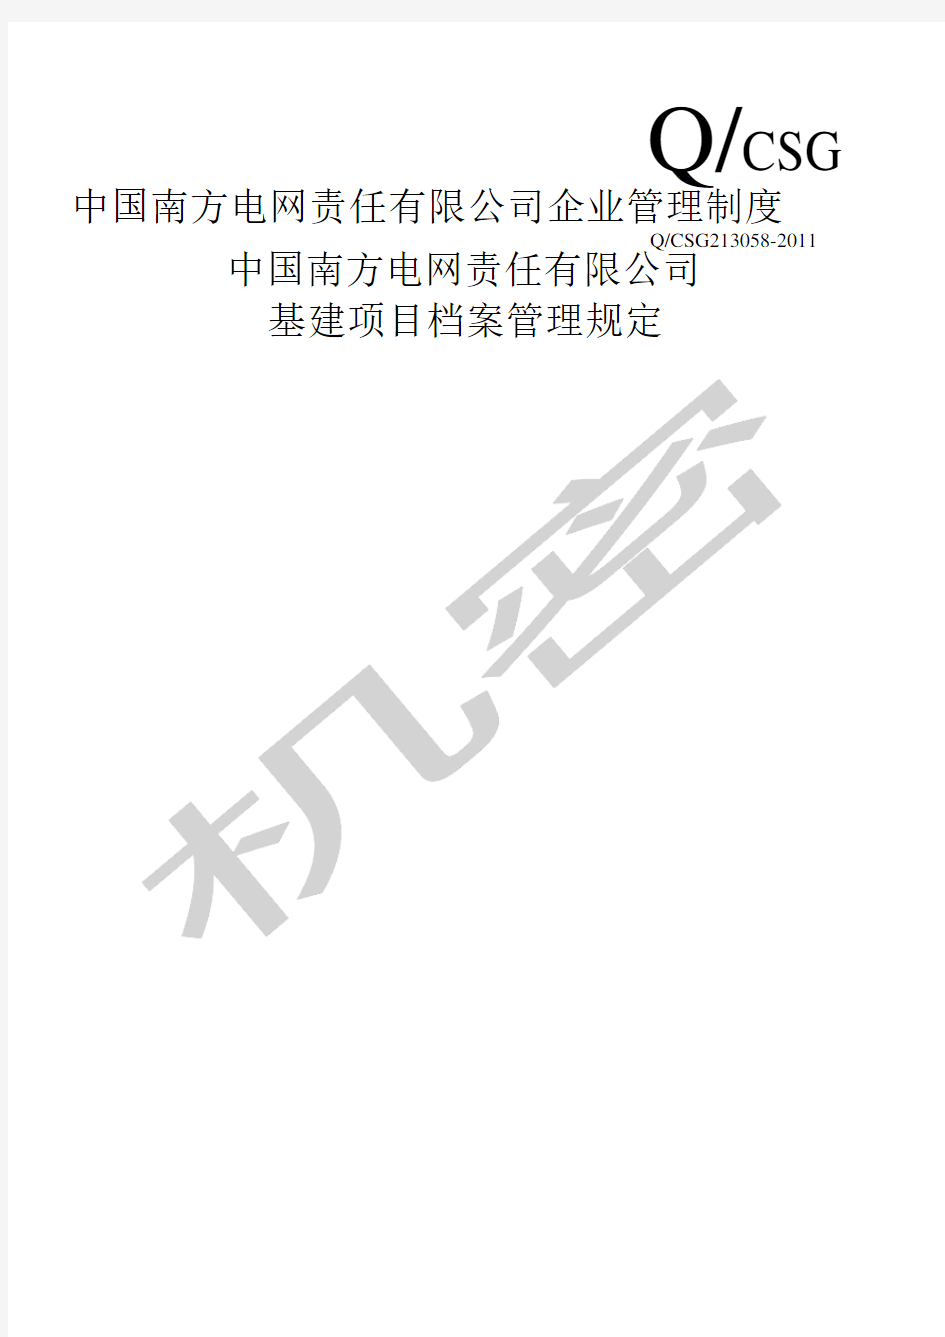 中国南方电网责任公司基建项目档案管理规定